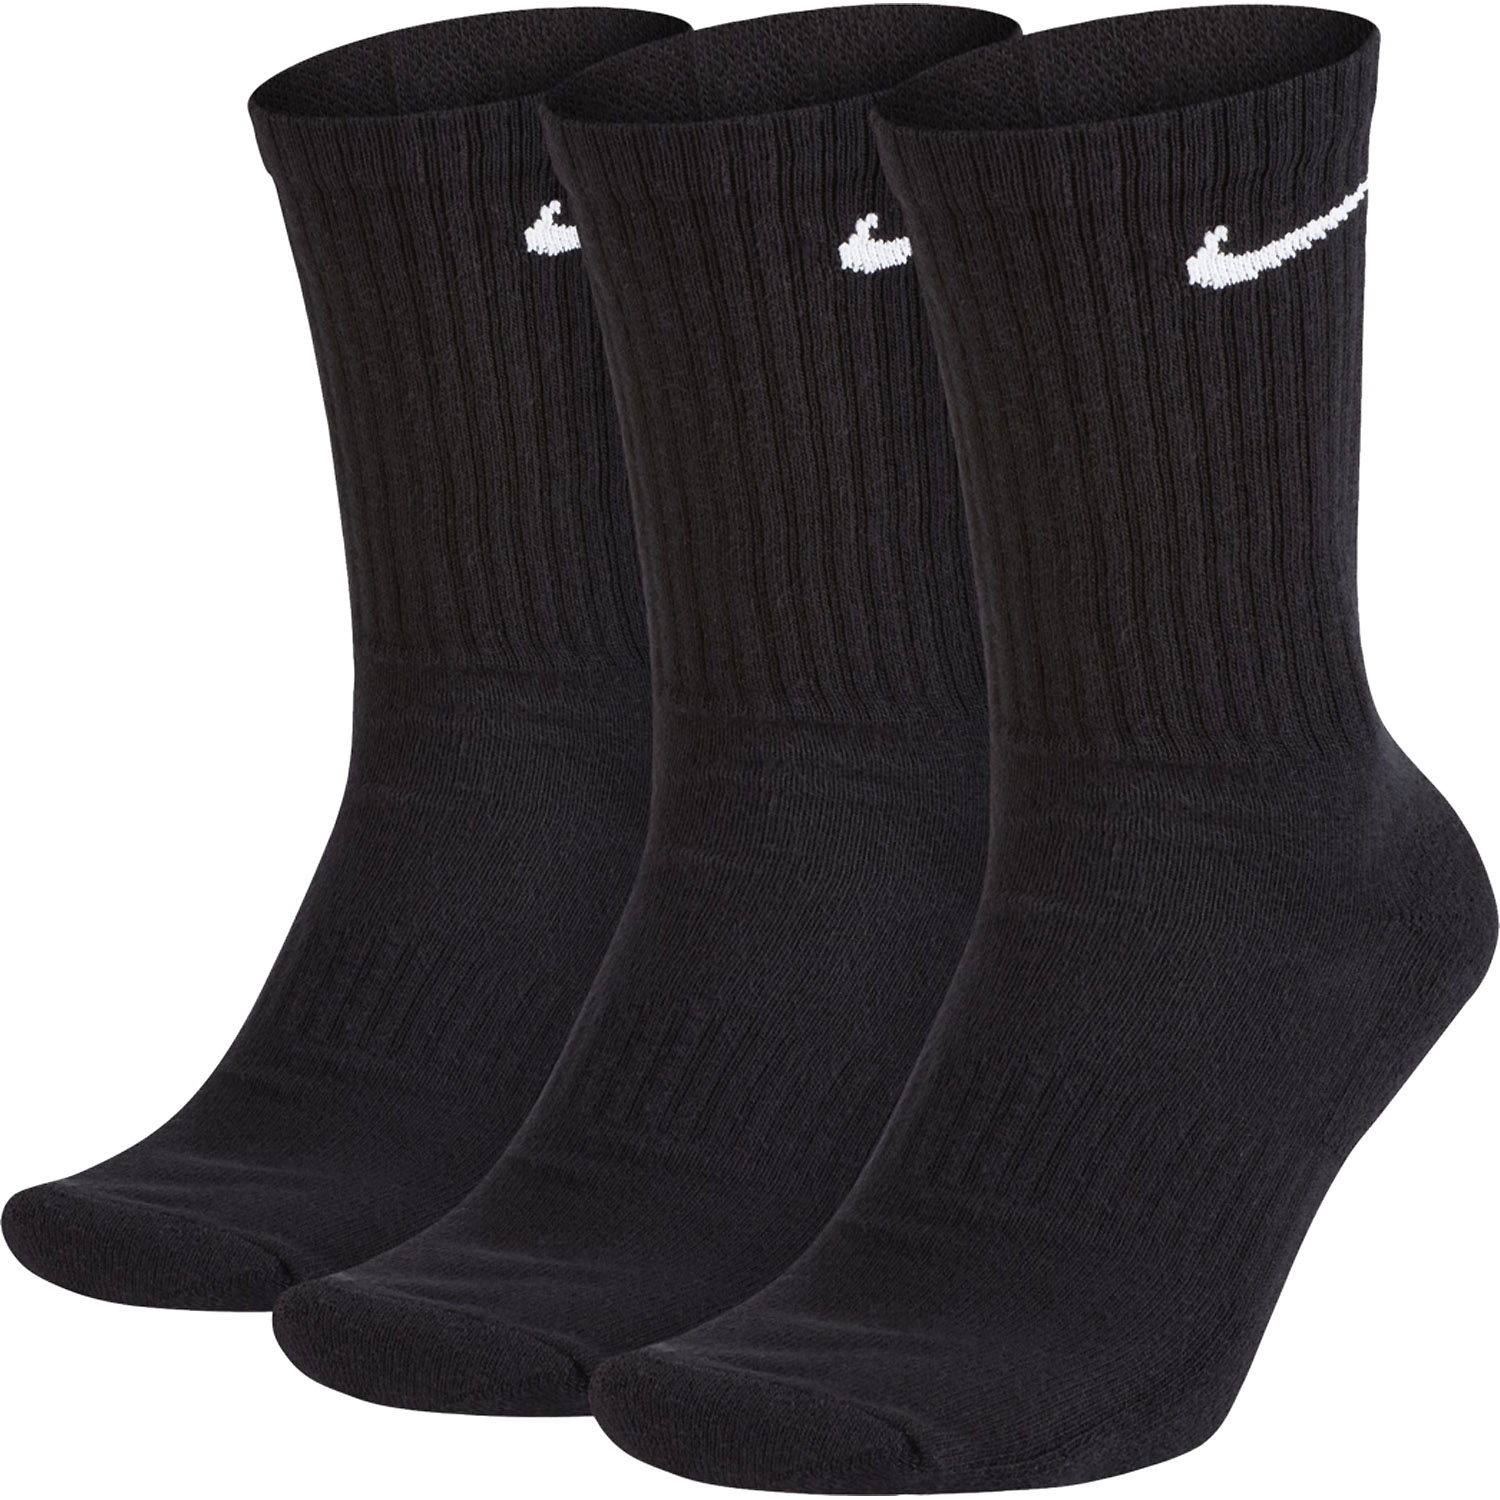 Herren Nike Socken Everyday Cushion Crew 3er Pack